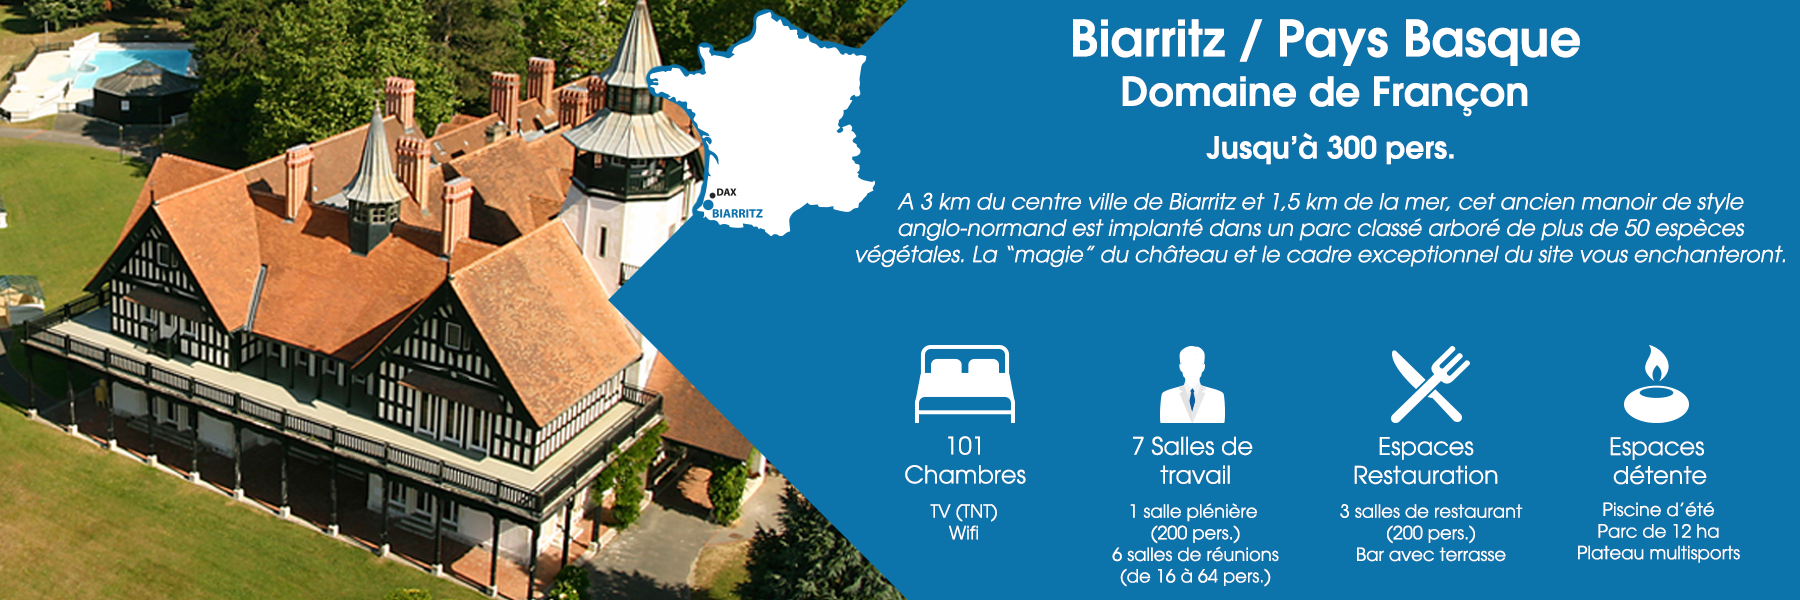 Le Domaine de Françon à Biarritz, au Pays Basque, peut accueillir jusqu’à 300 personnes. A 3 km du centre ville de Biarritz et 1,5 km de la mer, cet ancien manoir de style anglo-normand est implanté dans un parc classé arboré de plus de 50 espèces végétales. La “magie” du château et le cadre exceptionnel du site vous enchanteront. Ce domaine est composé de 101 chambres (avec TV TNT et Wifi), de 7 salles de travail (dont une salle plénière pour 200 personnes et 6 salles de réunions pour 16 à 64 personnes), d’espaces de restauration (3 salles de restaurant pour 200 personnes et un bar avec terrasse) et d’espaces de détente (une piscine d’été, un parc de 12 ha et un plateau multisports).